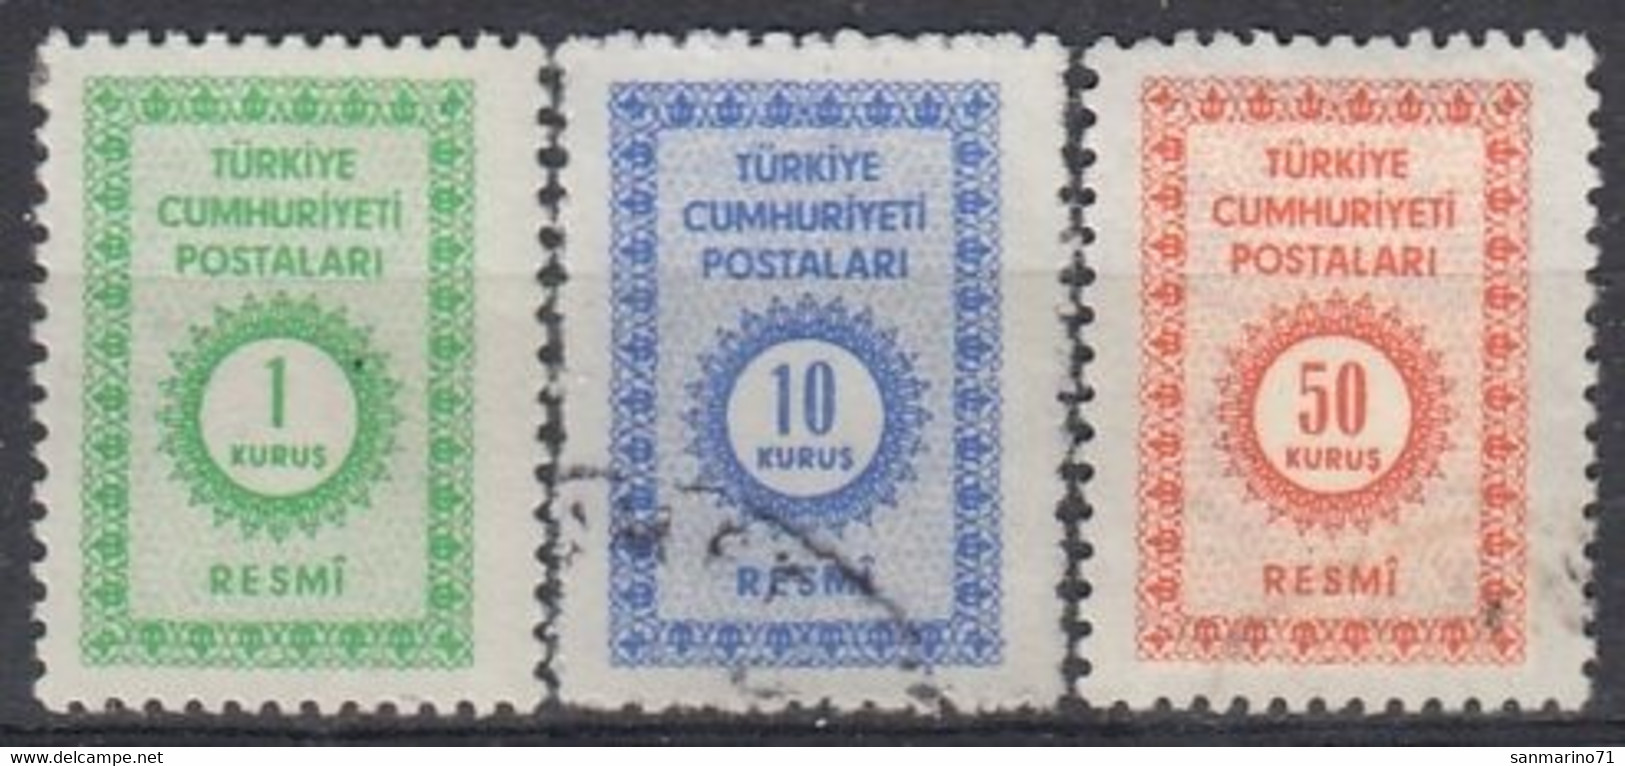 TURKEY 100-102,postage Due,used - Postage Due